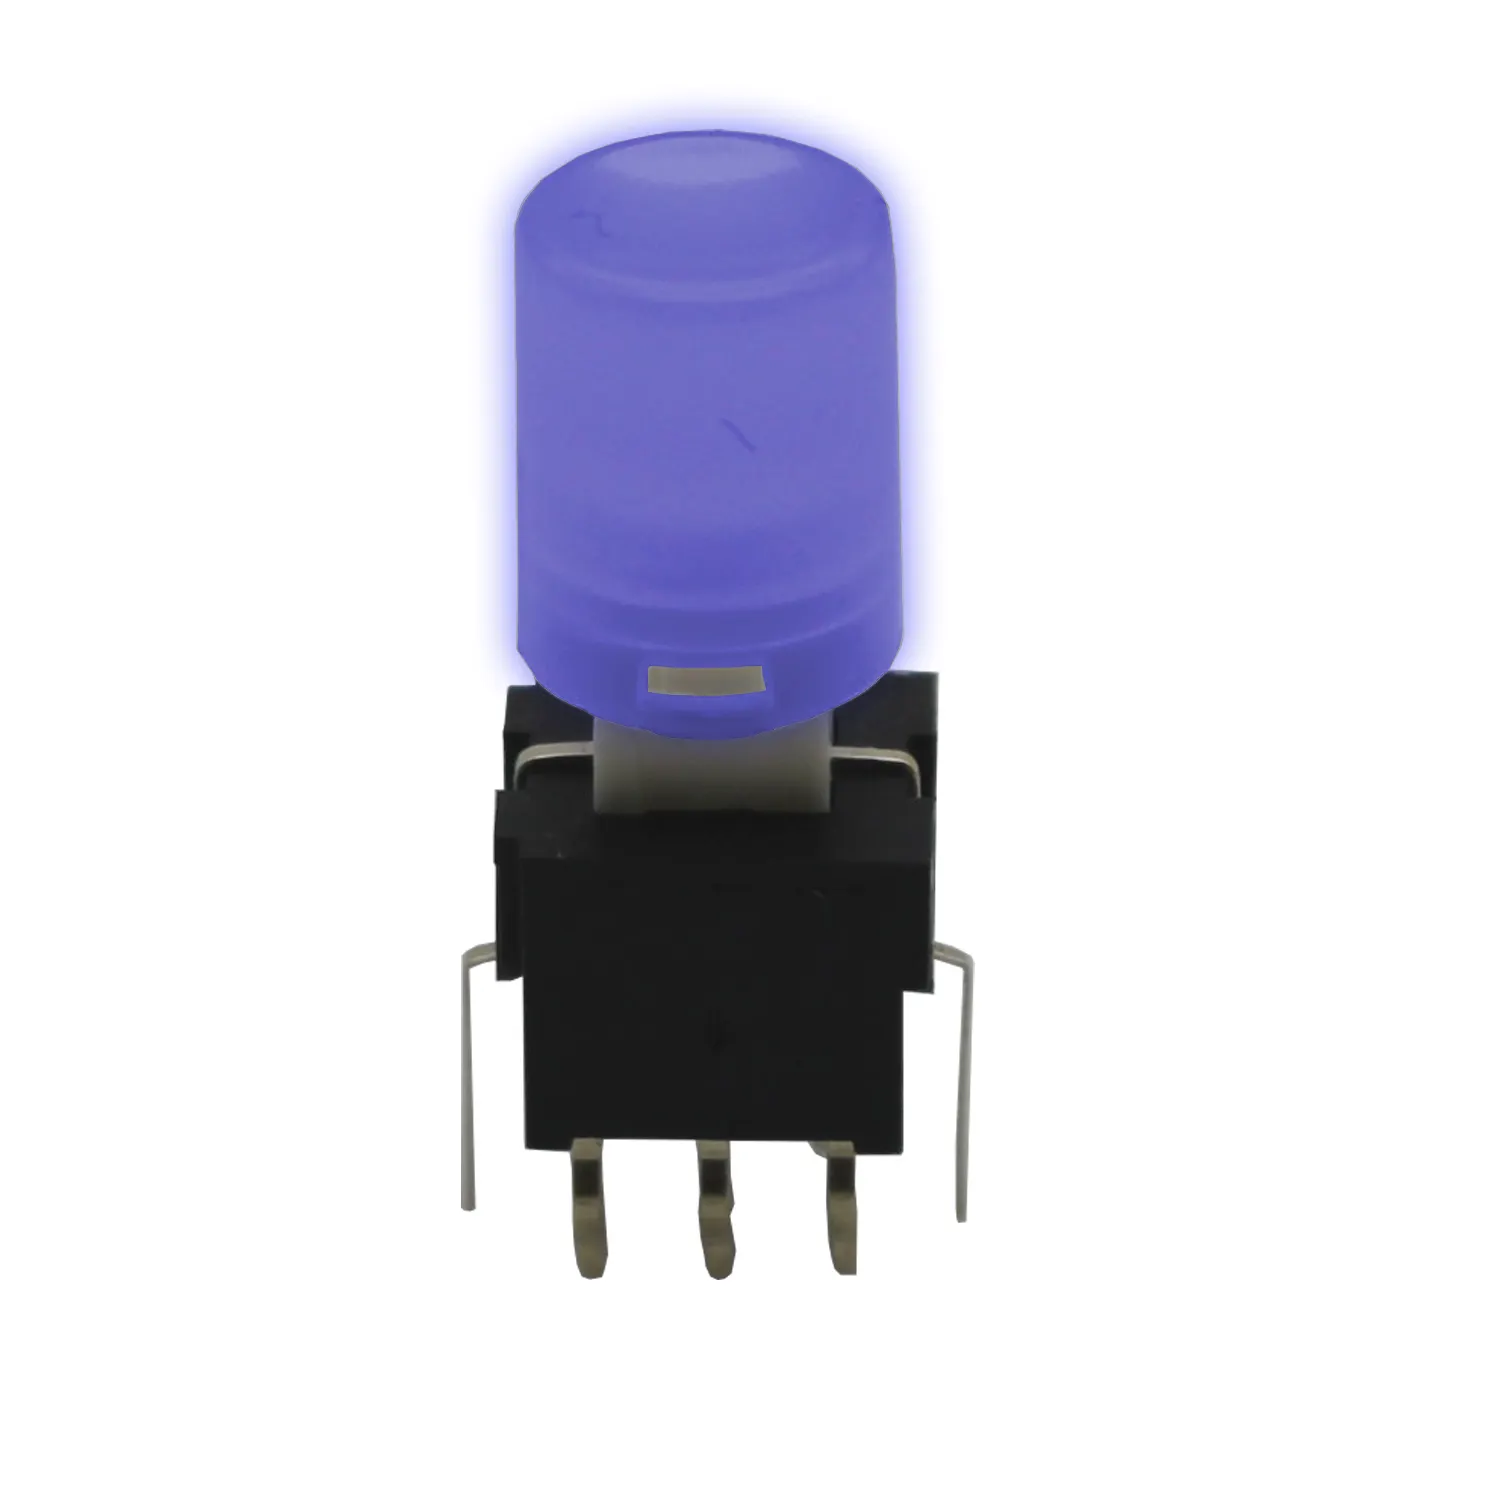 Lakeview PLA Serie 0.1A 30V DC illuminato A LED Micro Interruttore di Pulsante UNA varietà di colori della lampada e berretti sono disponibili